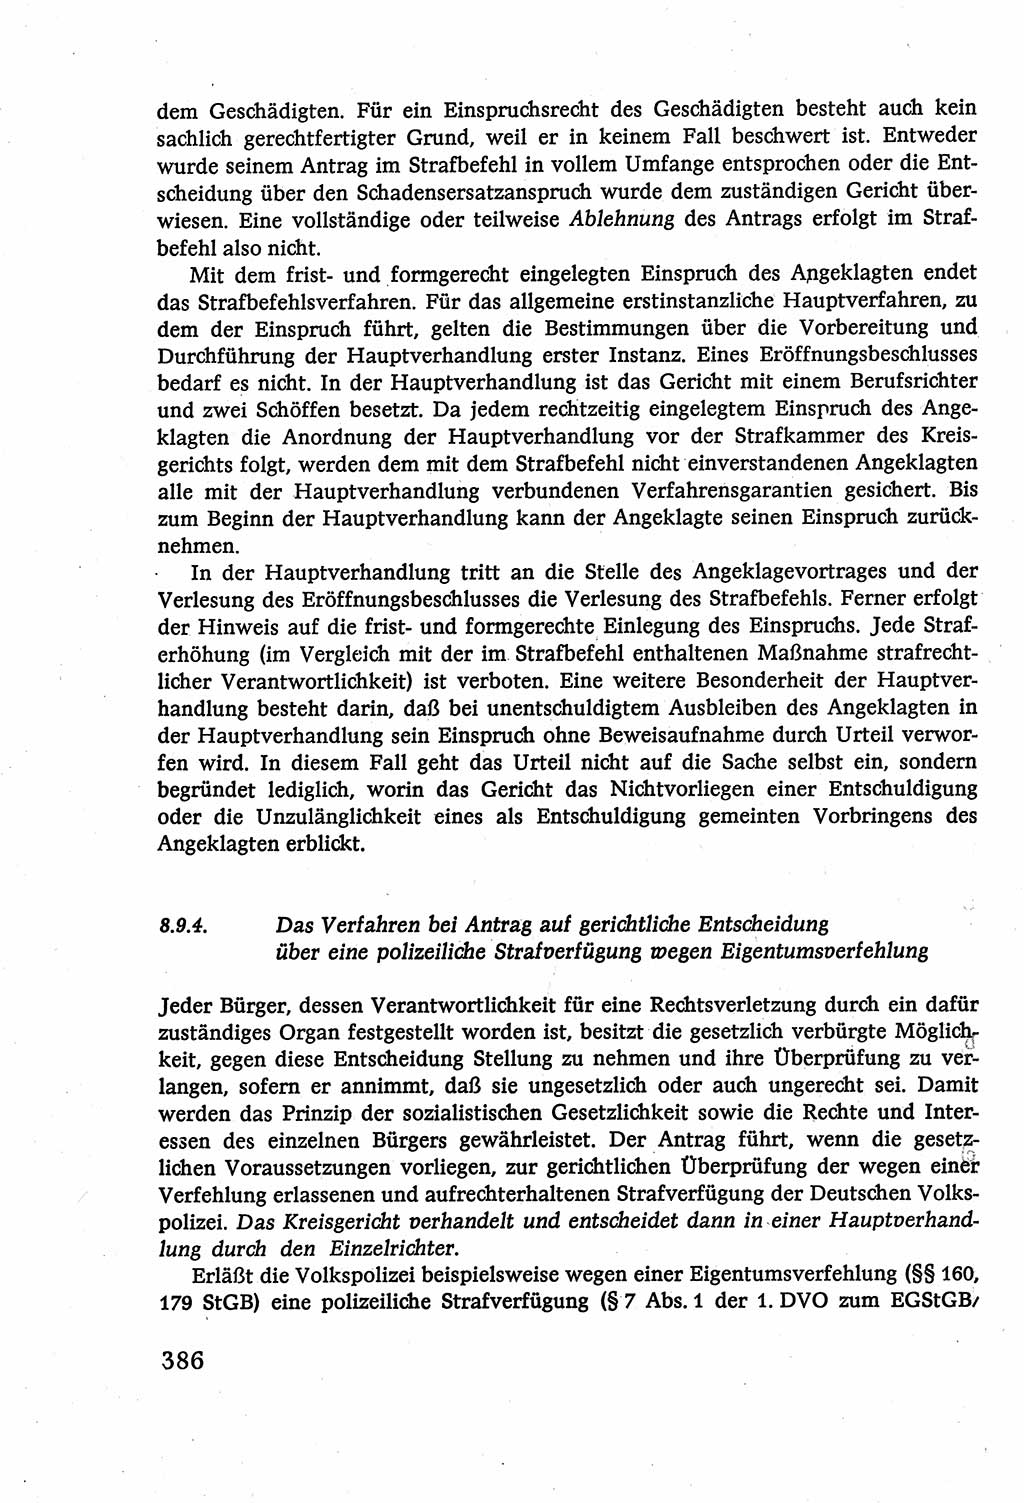 Strafverfahrensrecht [Deutsche Demokratische Republik (DDR)], Lehrbuch 1977, Seite 386 (Strafverf.-R. DDR Lb. 1977, S. 386)